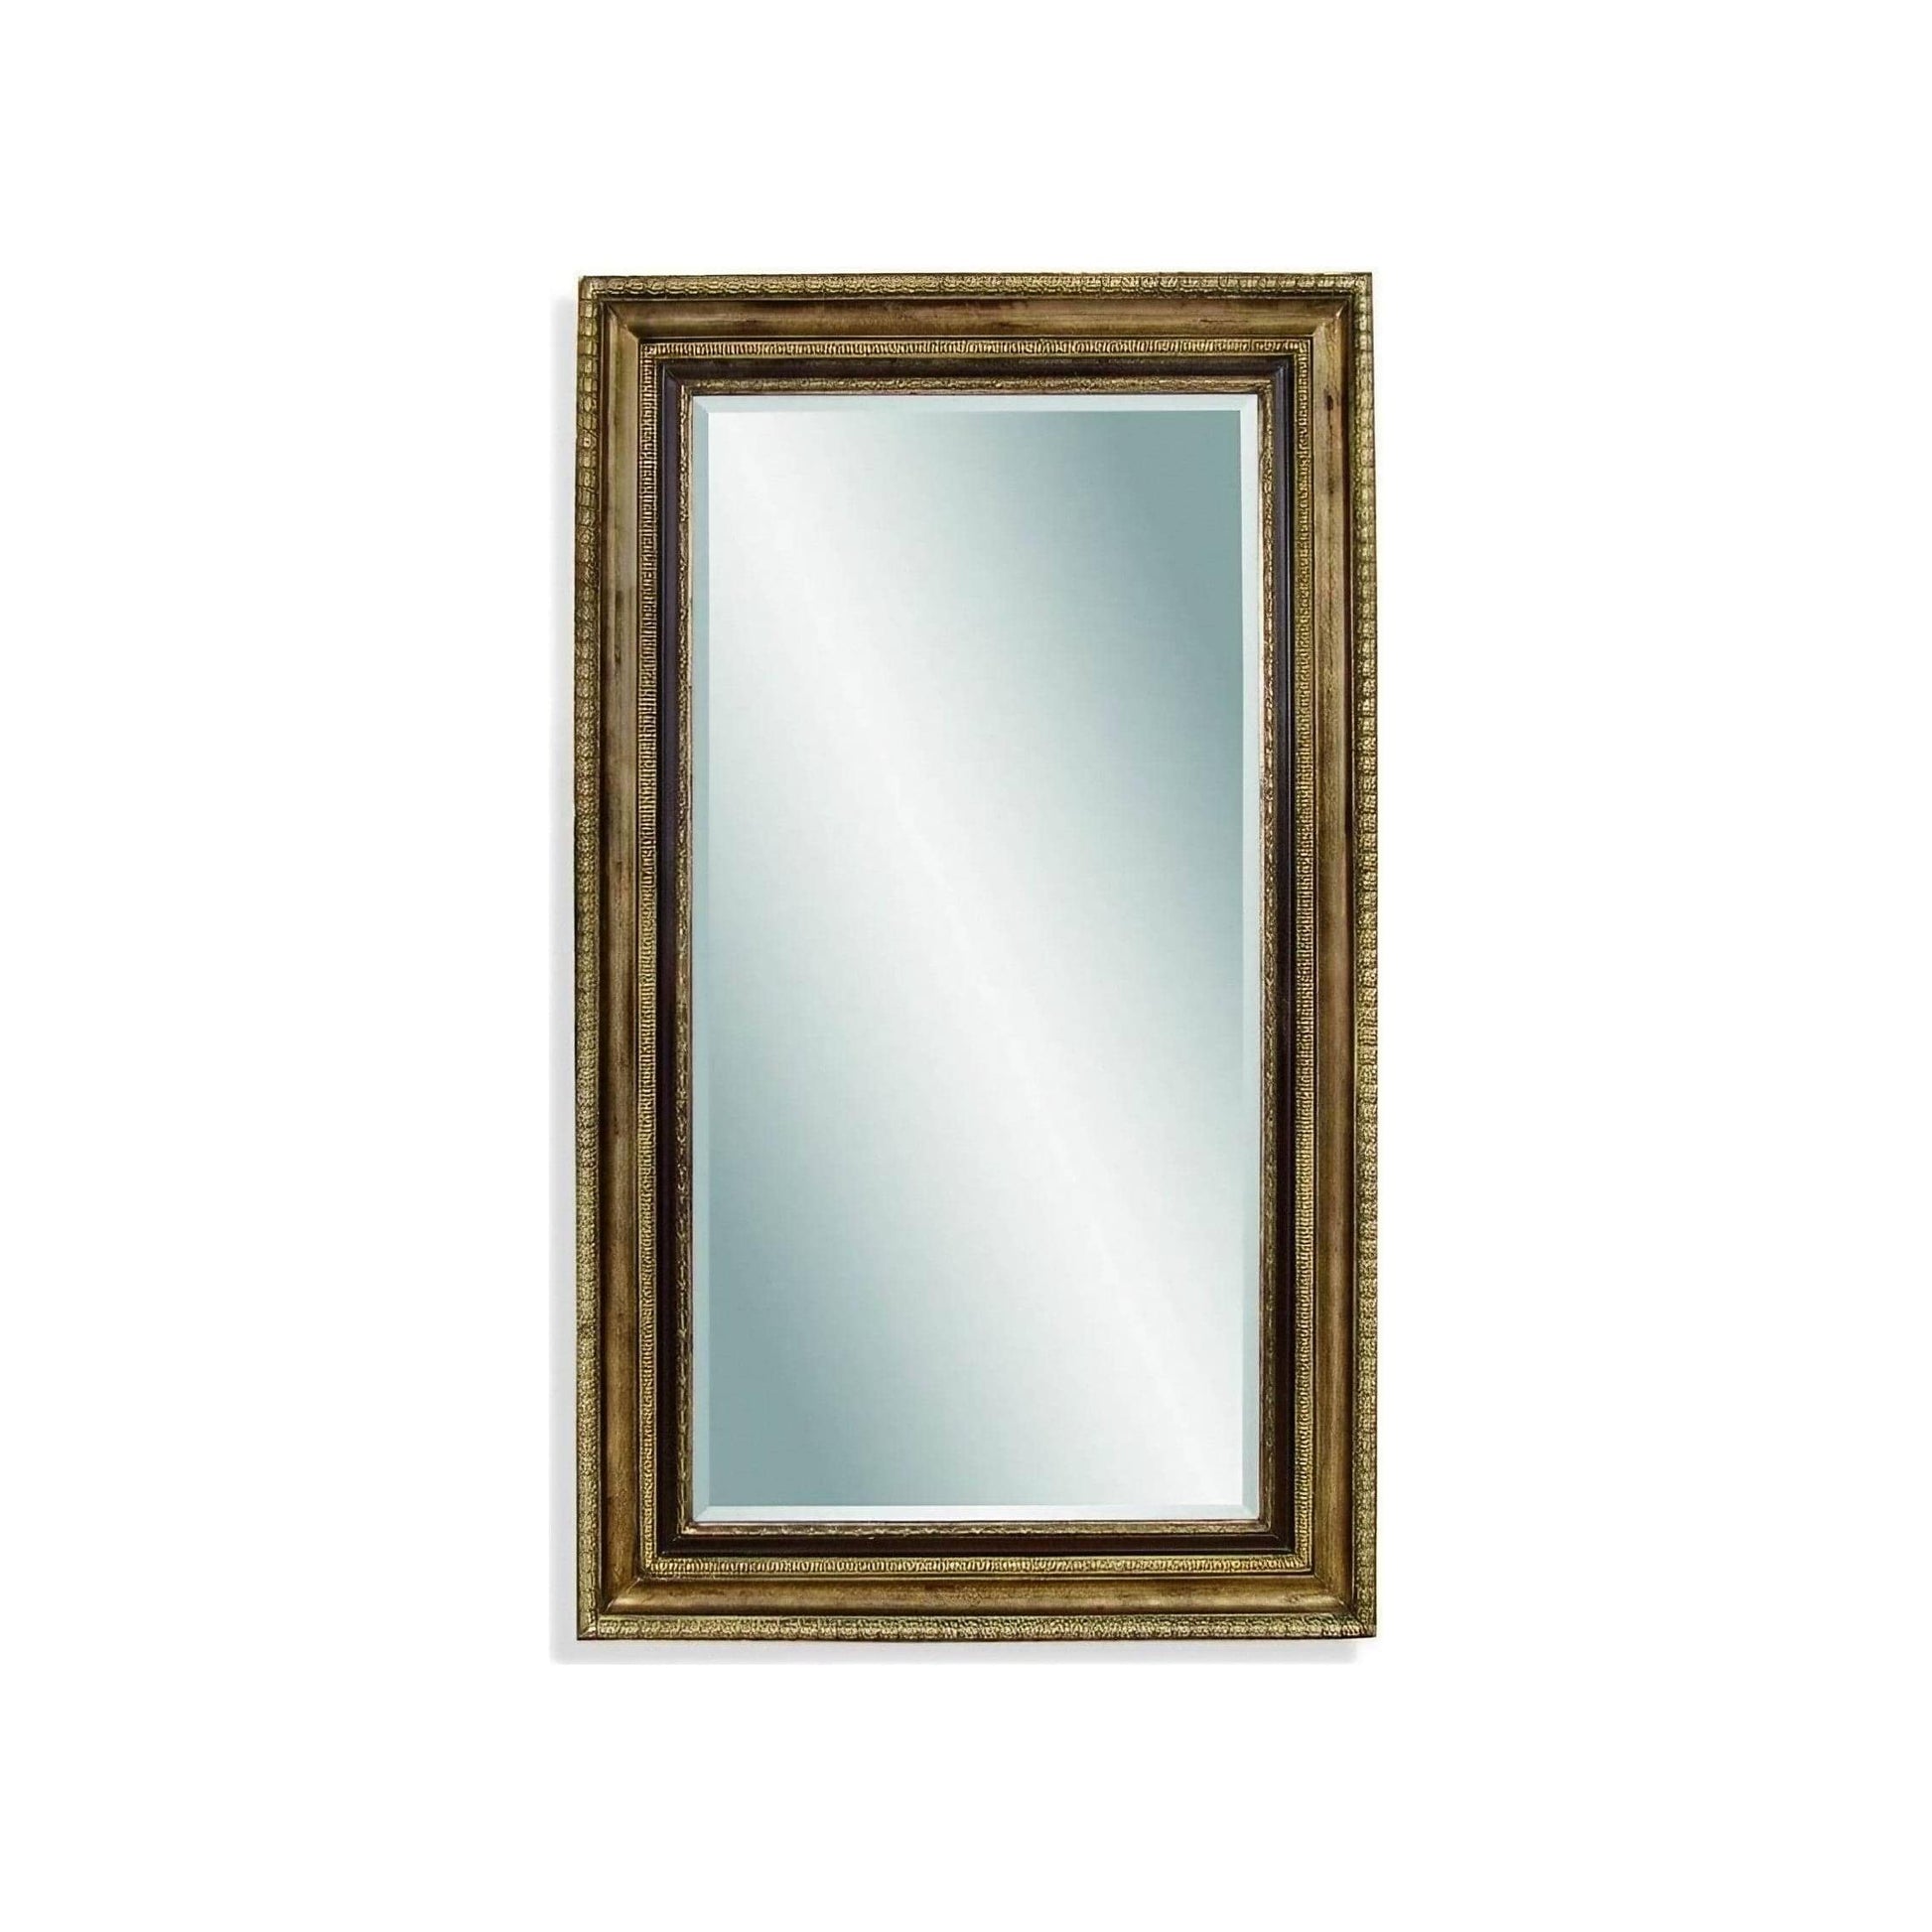 Bassett Mirror Sergio Antique Gold Floor Mirror 50W x 86H Full-Length Mirror, Floor Mirror, Full Body Mirror, Large Mirror Bassett Mirror Company 